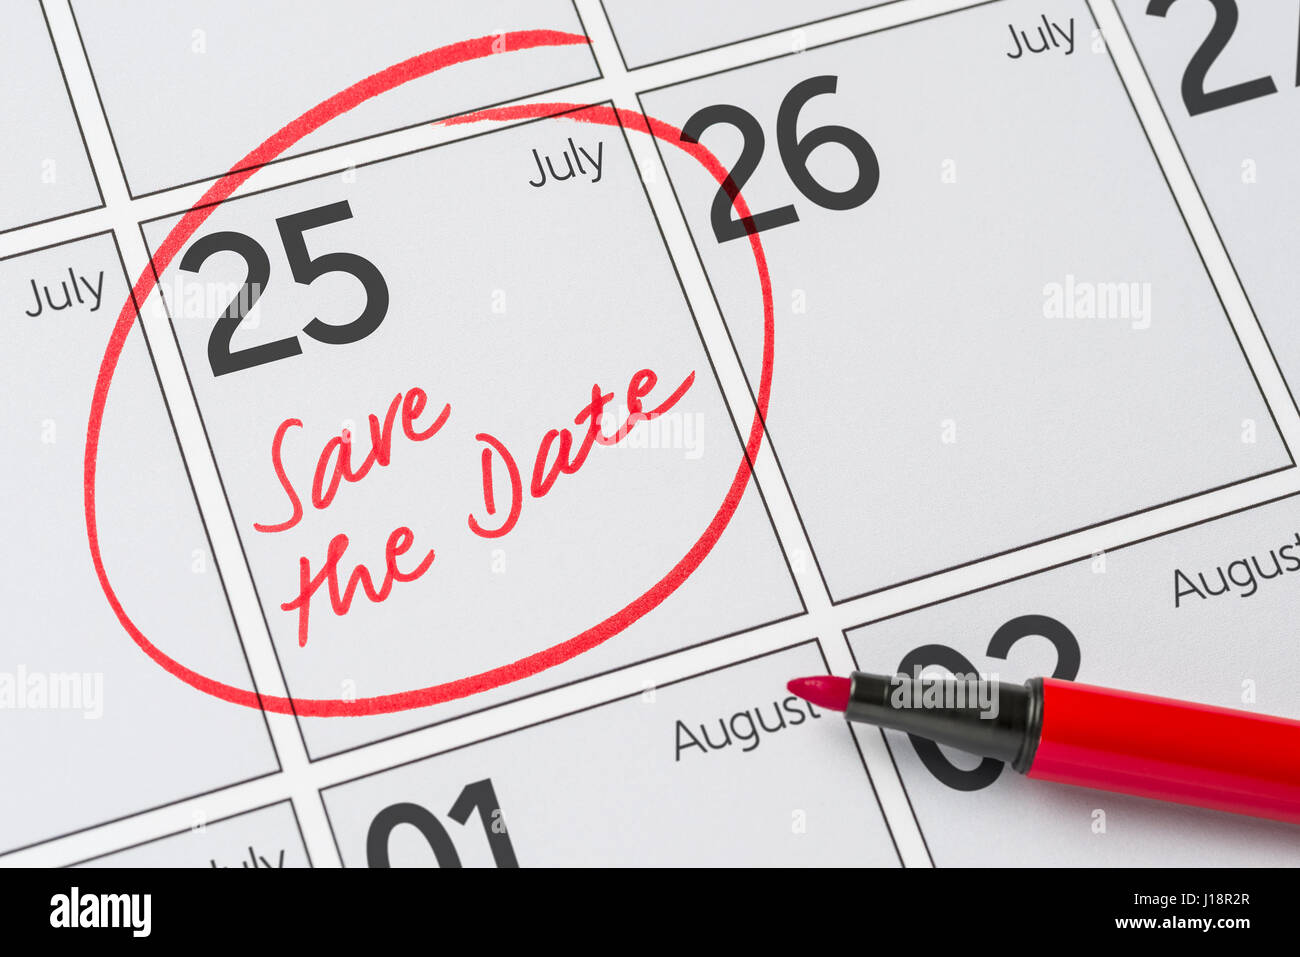 Enregistrer la date inscrite sur un calendrier - Juillet 25 Banque D'Images